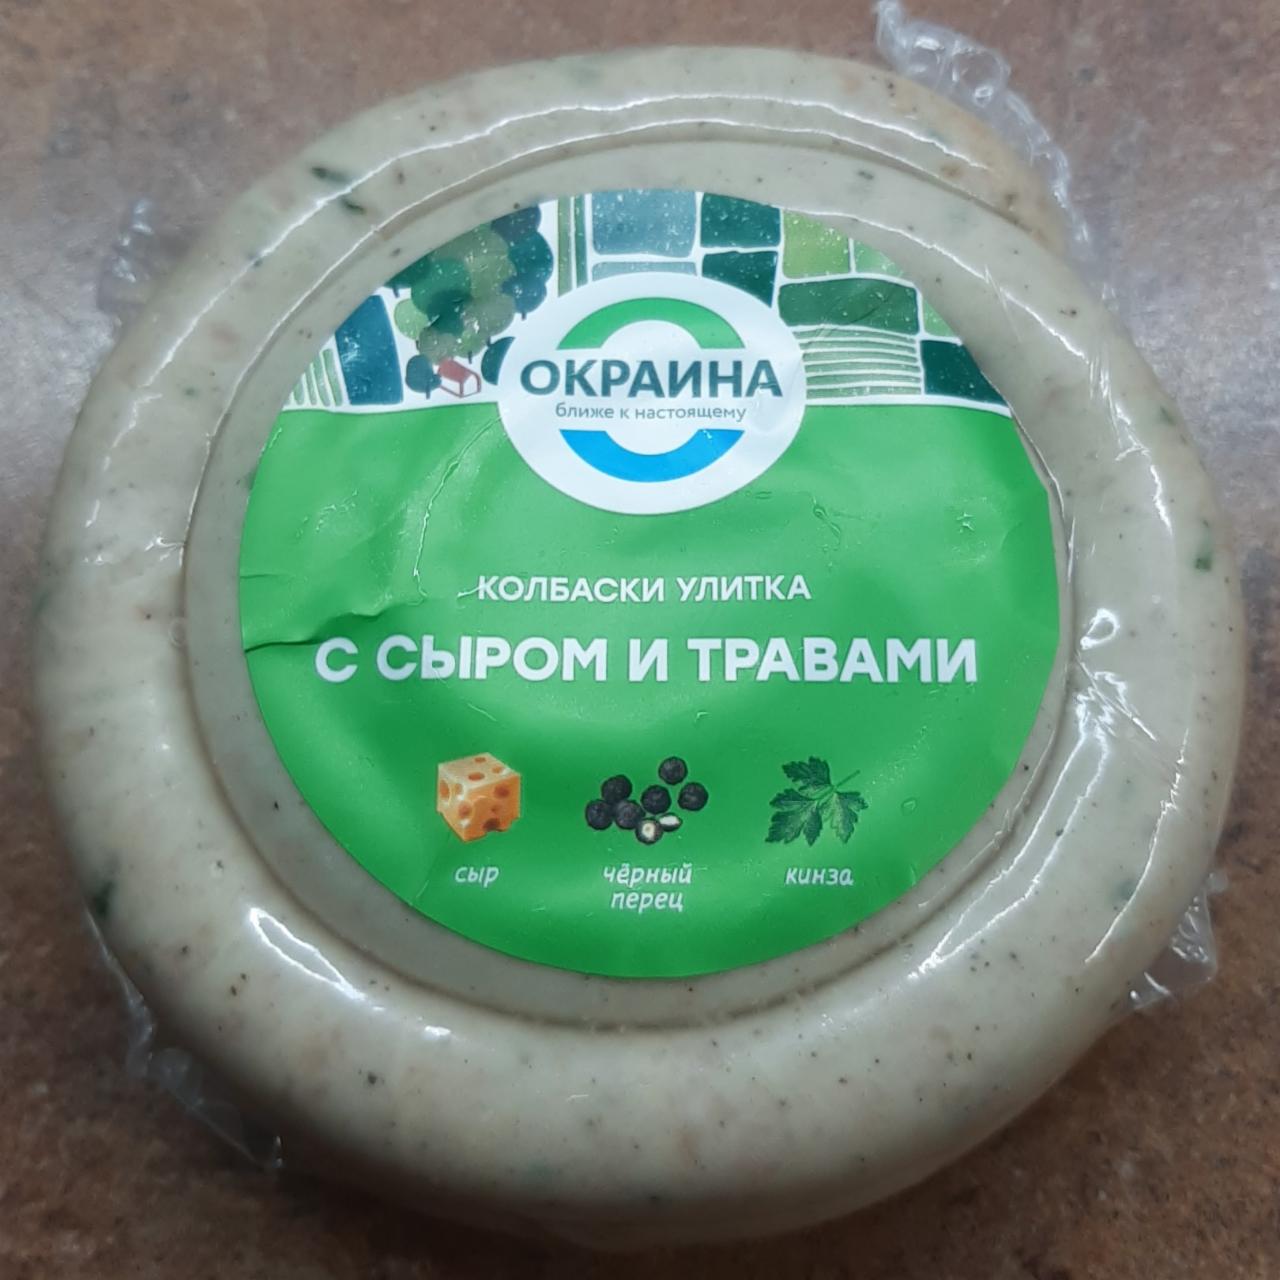 Фото - Колбаски для жарки Улитка с сыром и травами Окраина